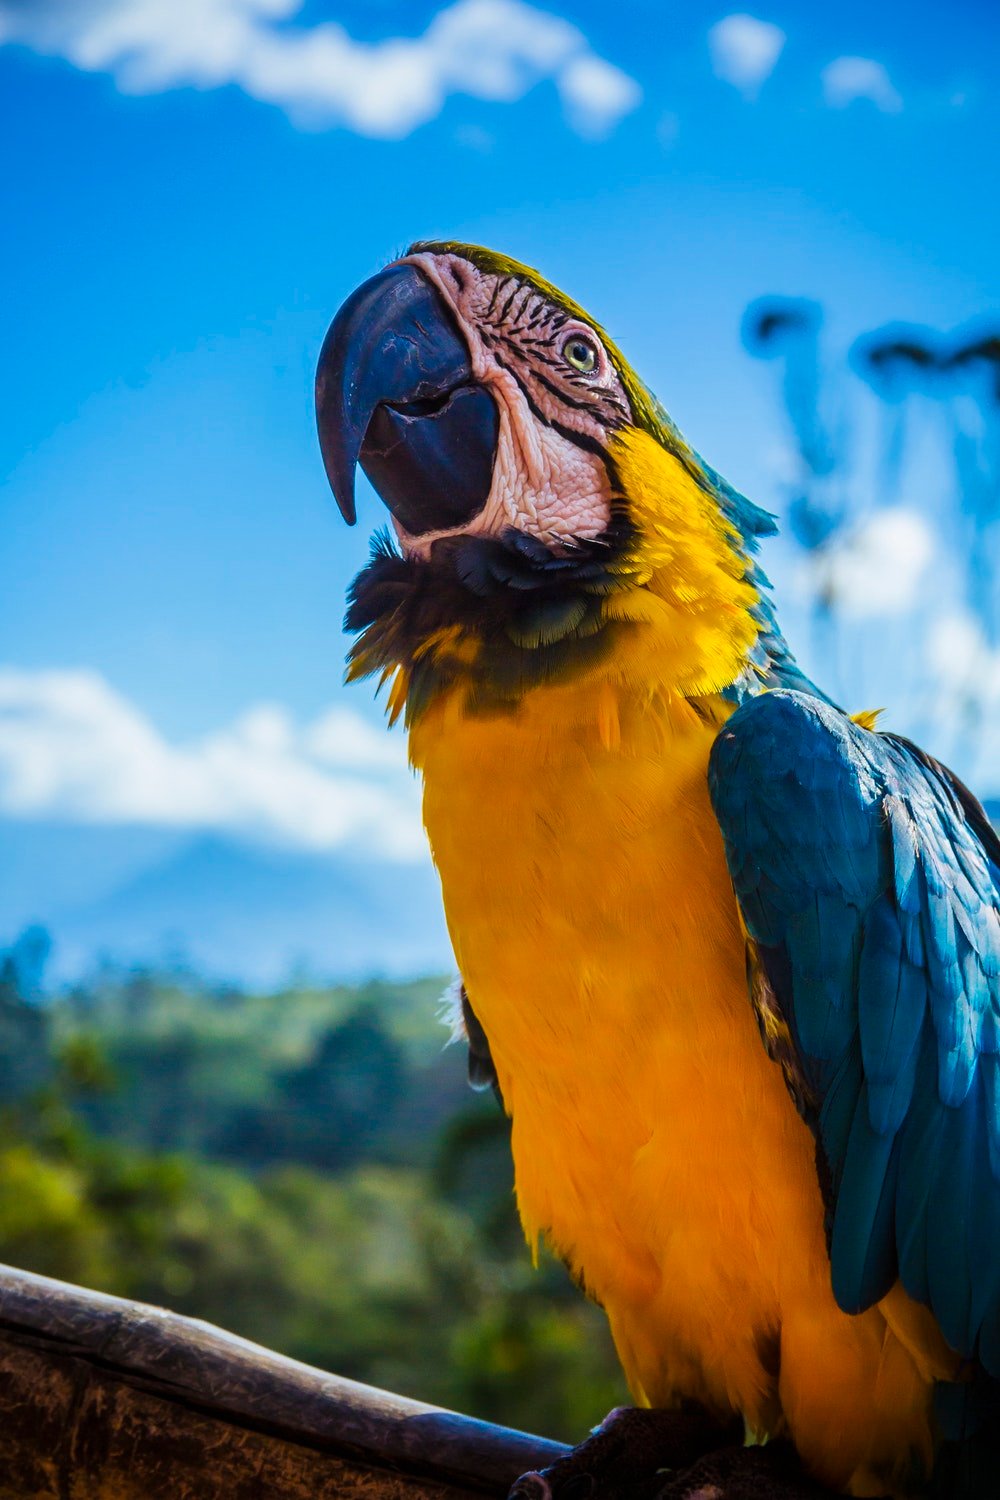 عکس استوک جالب از طوطی Macaw خوشرنگ زرد و آبی از نزدیک